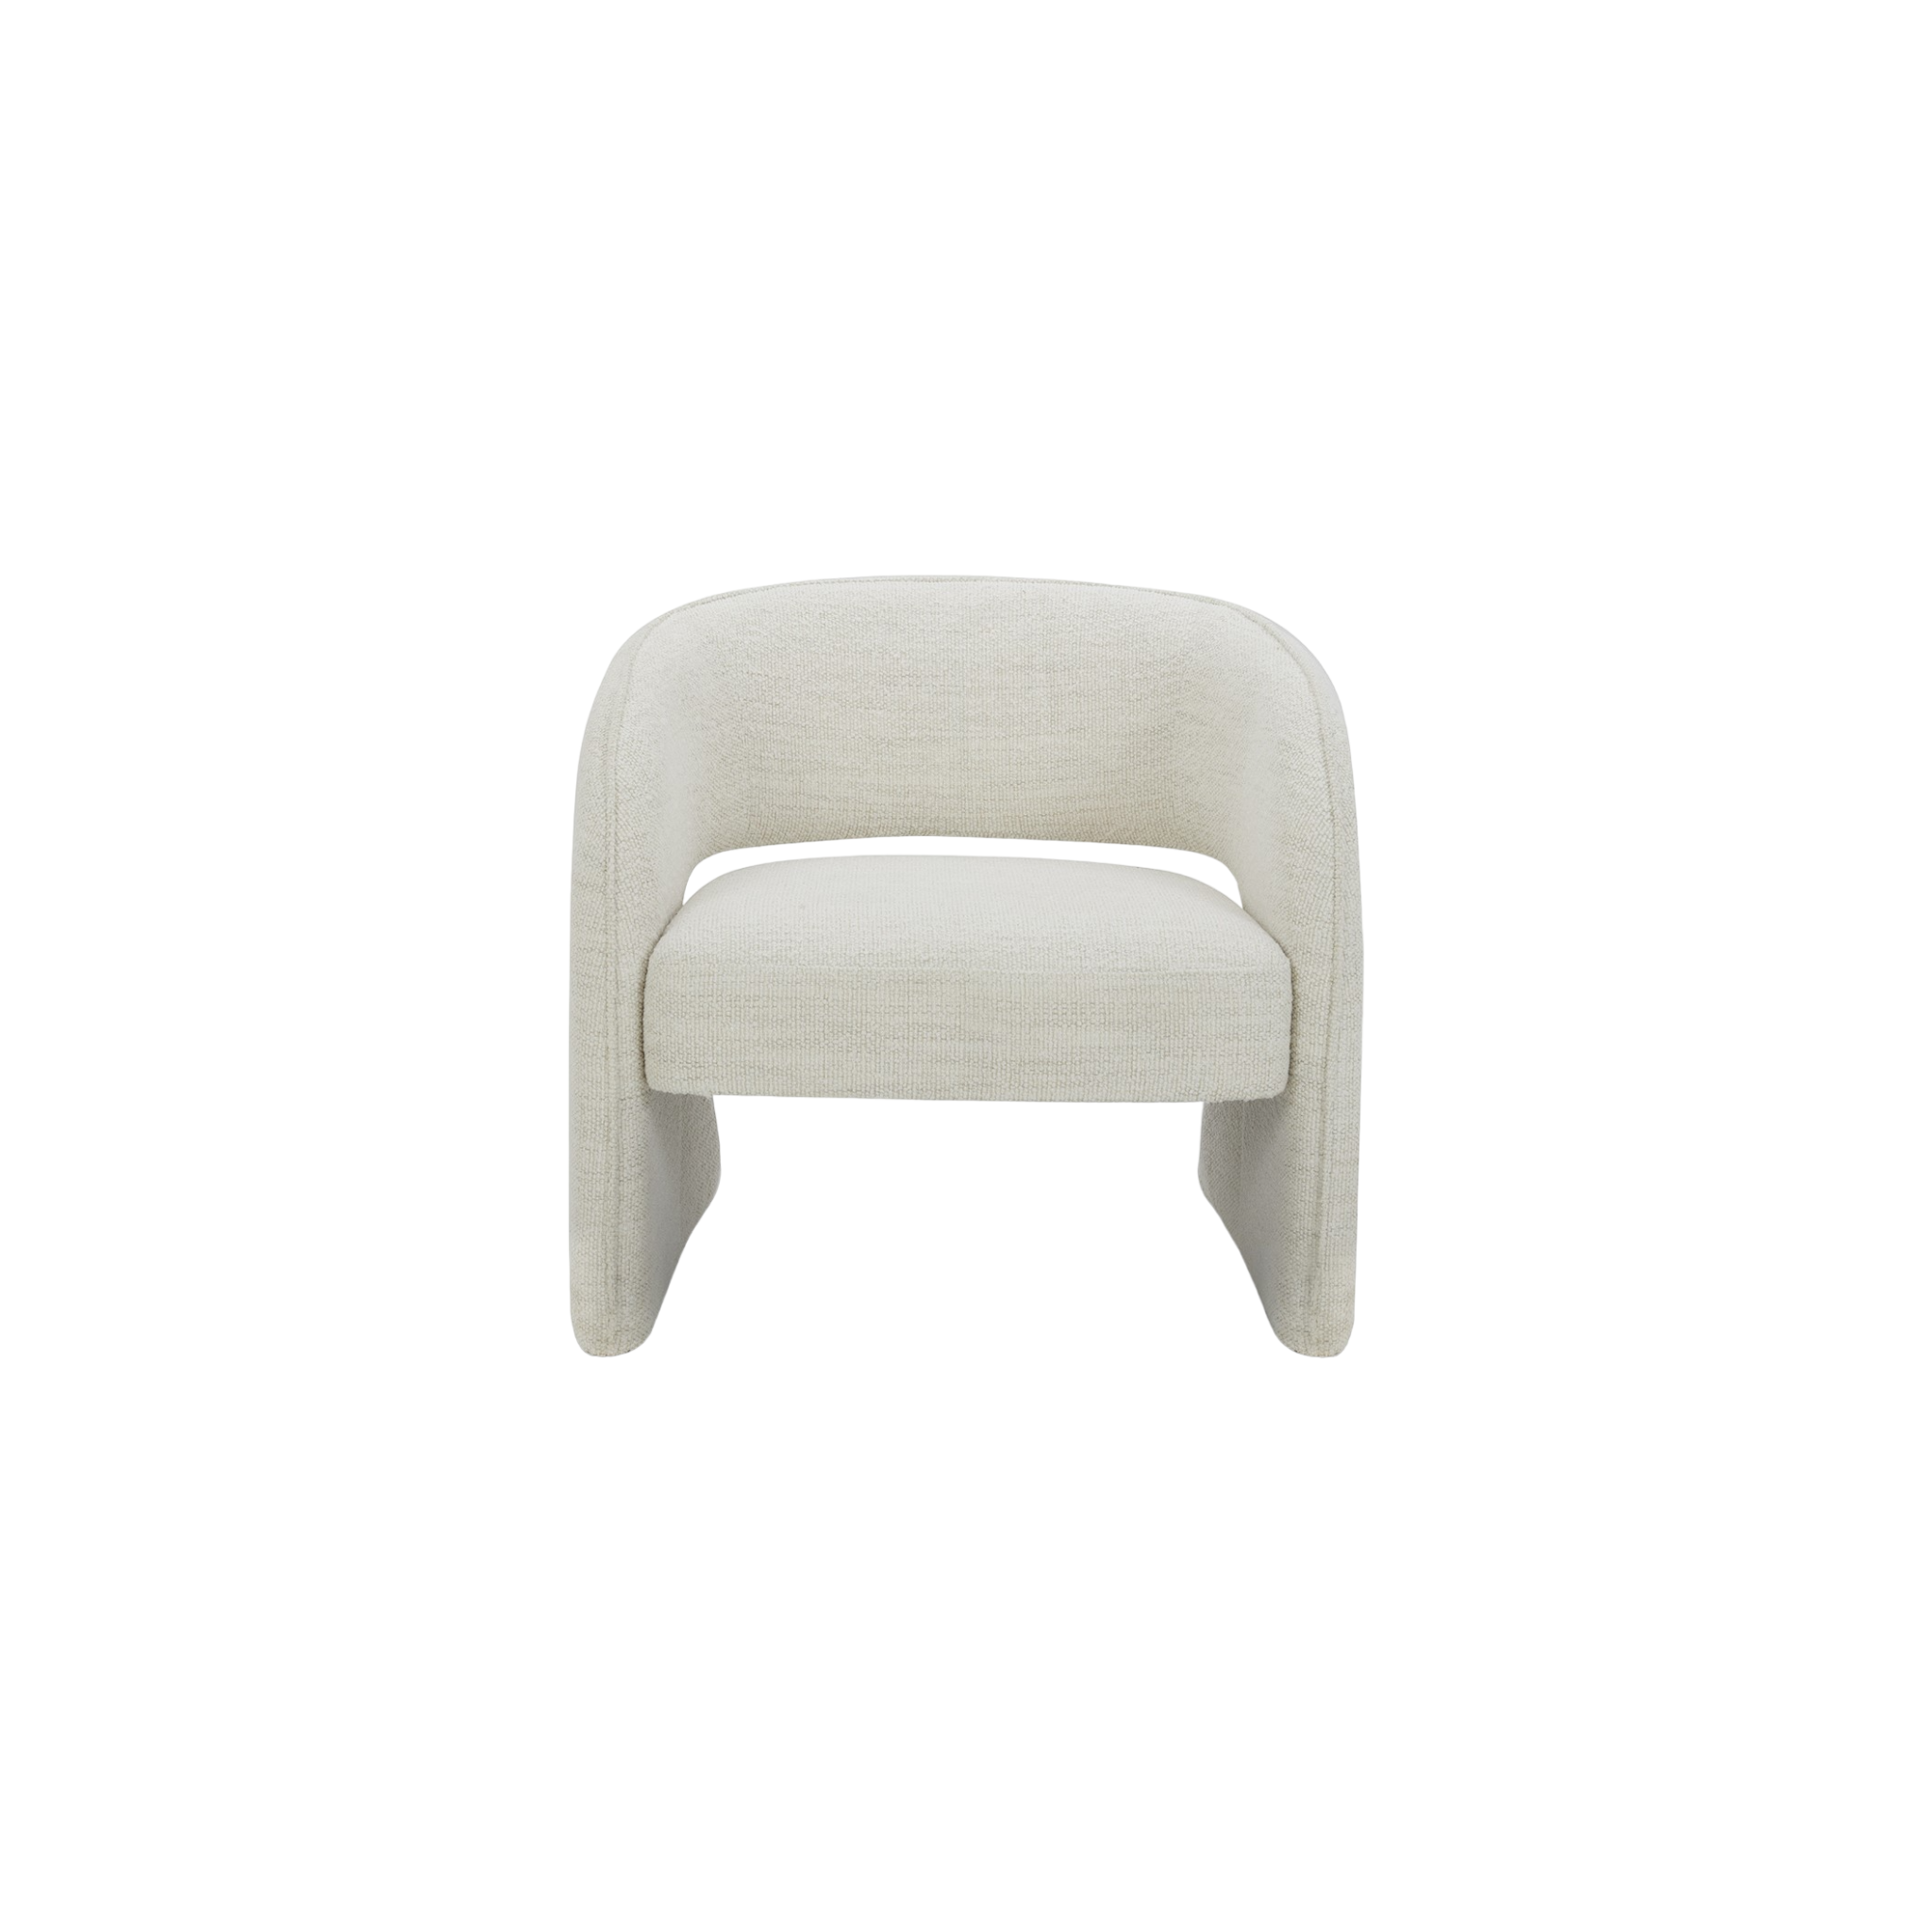 Kilkis White Lounge Chair